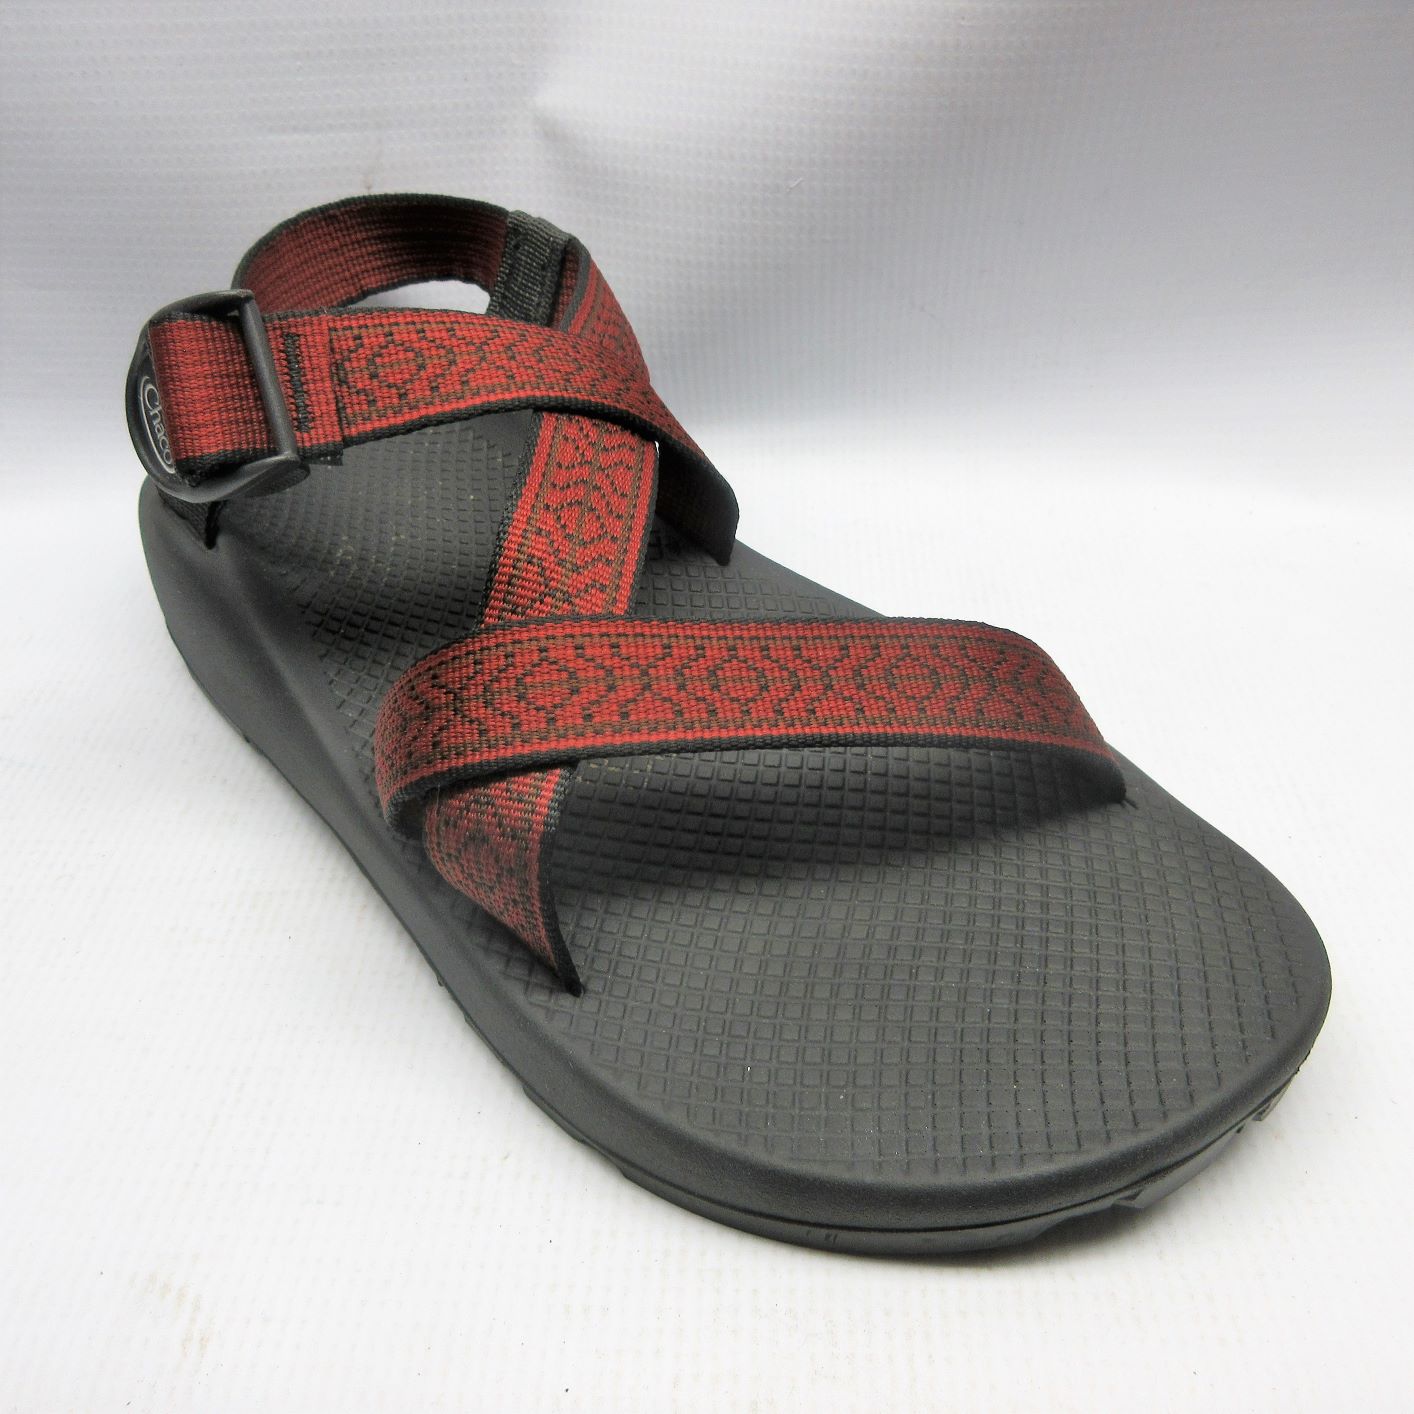 size 10 sandals